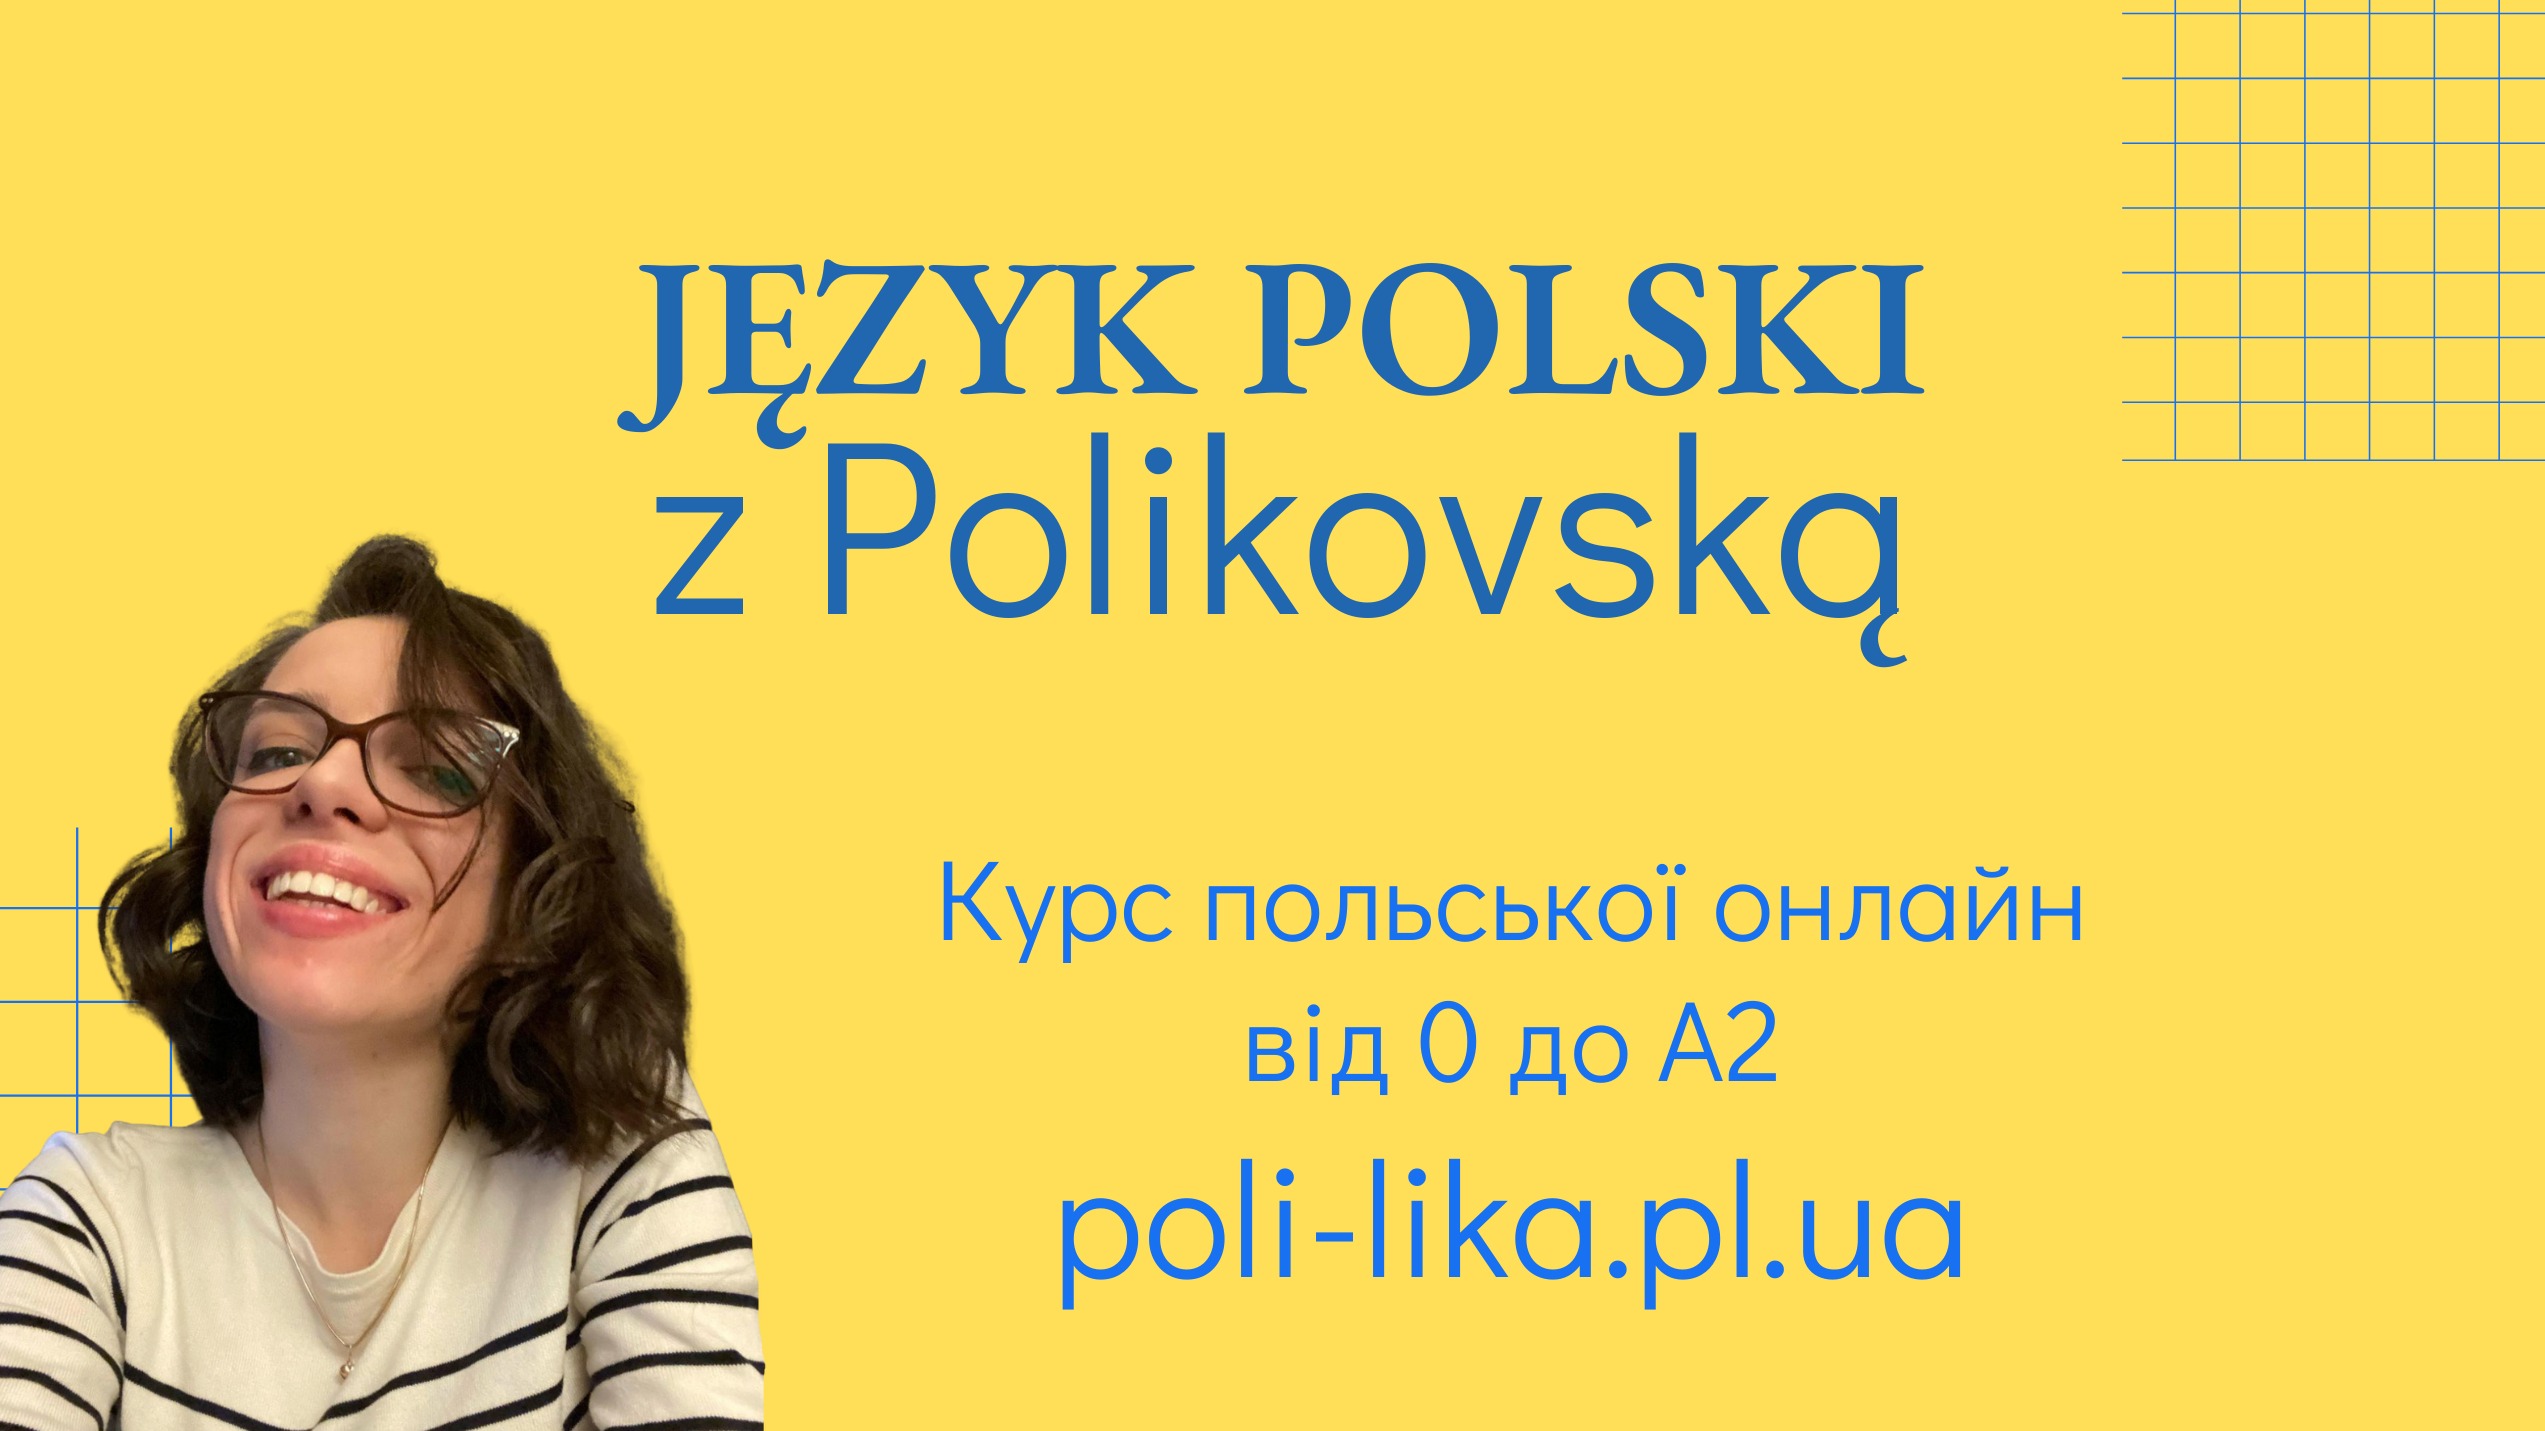 Język Polski z Polikowską A1-A2